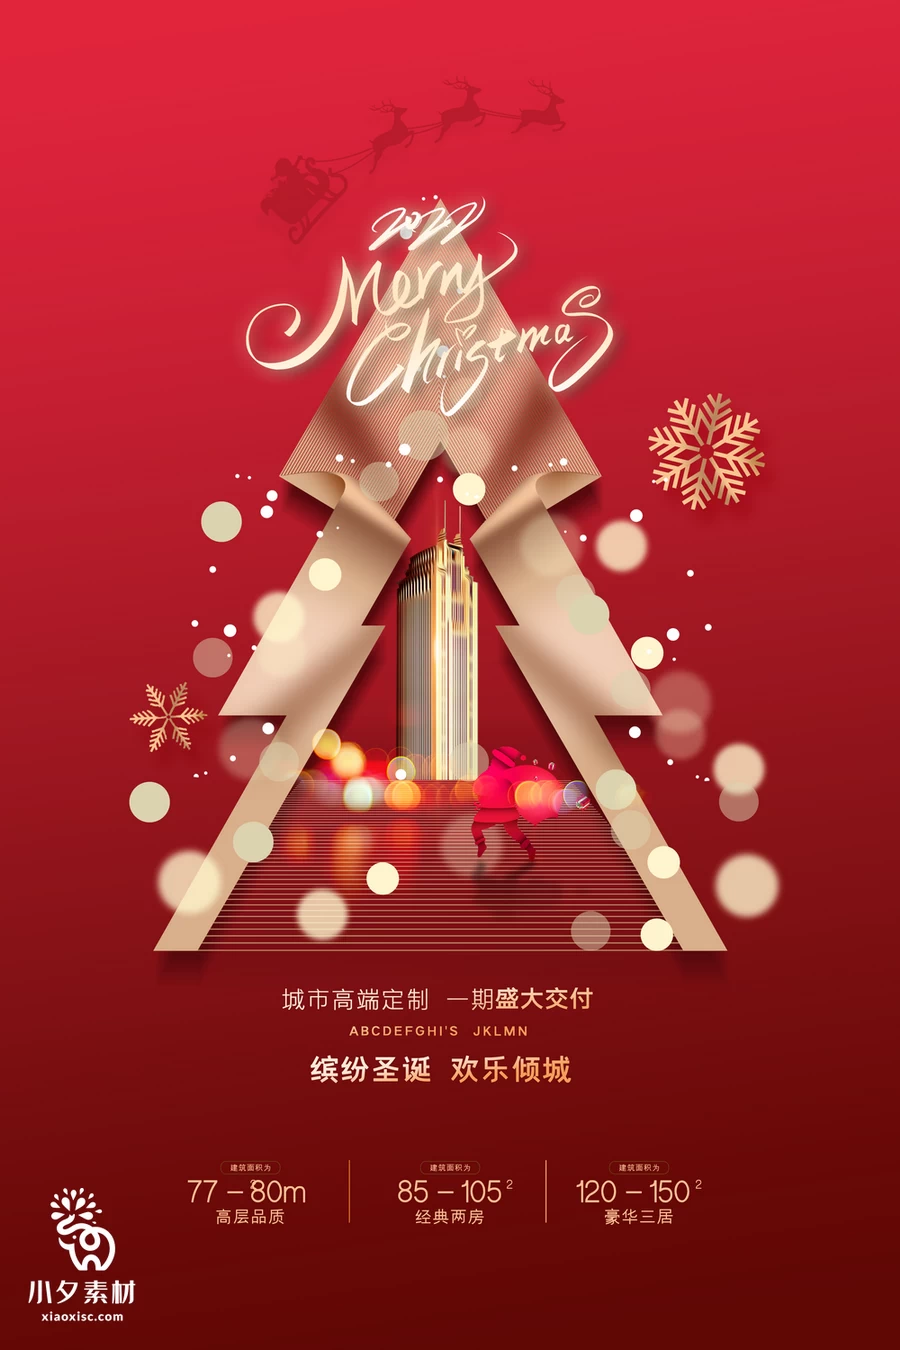 圣诞节节日节庆海报模板PSD分层设计素材【005】